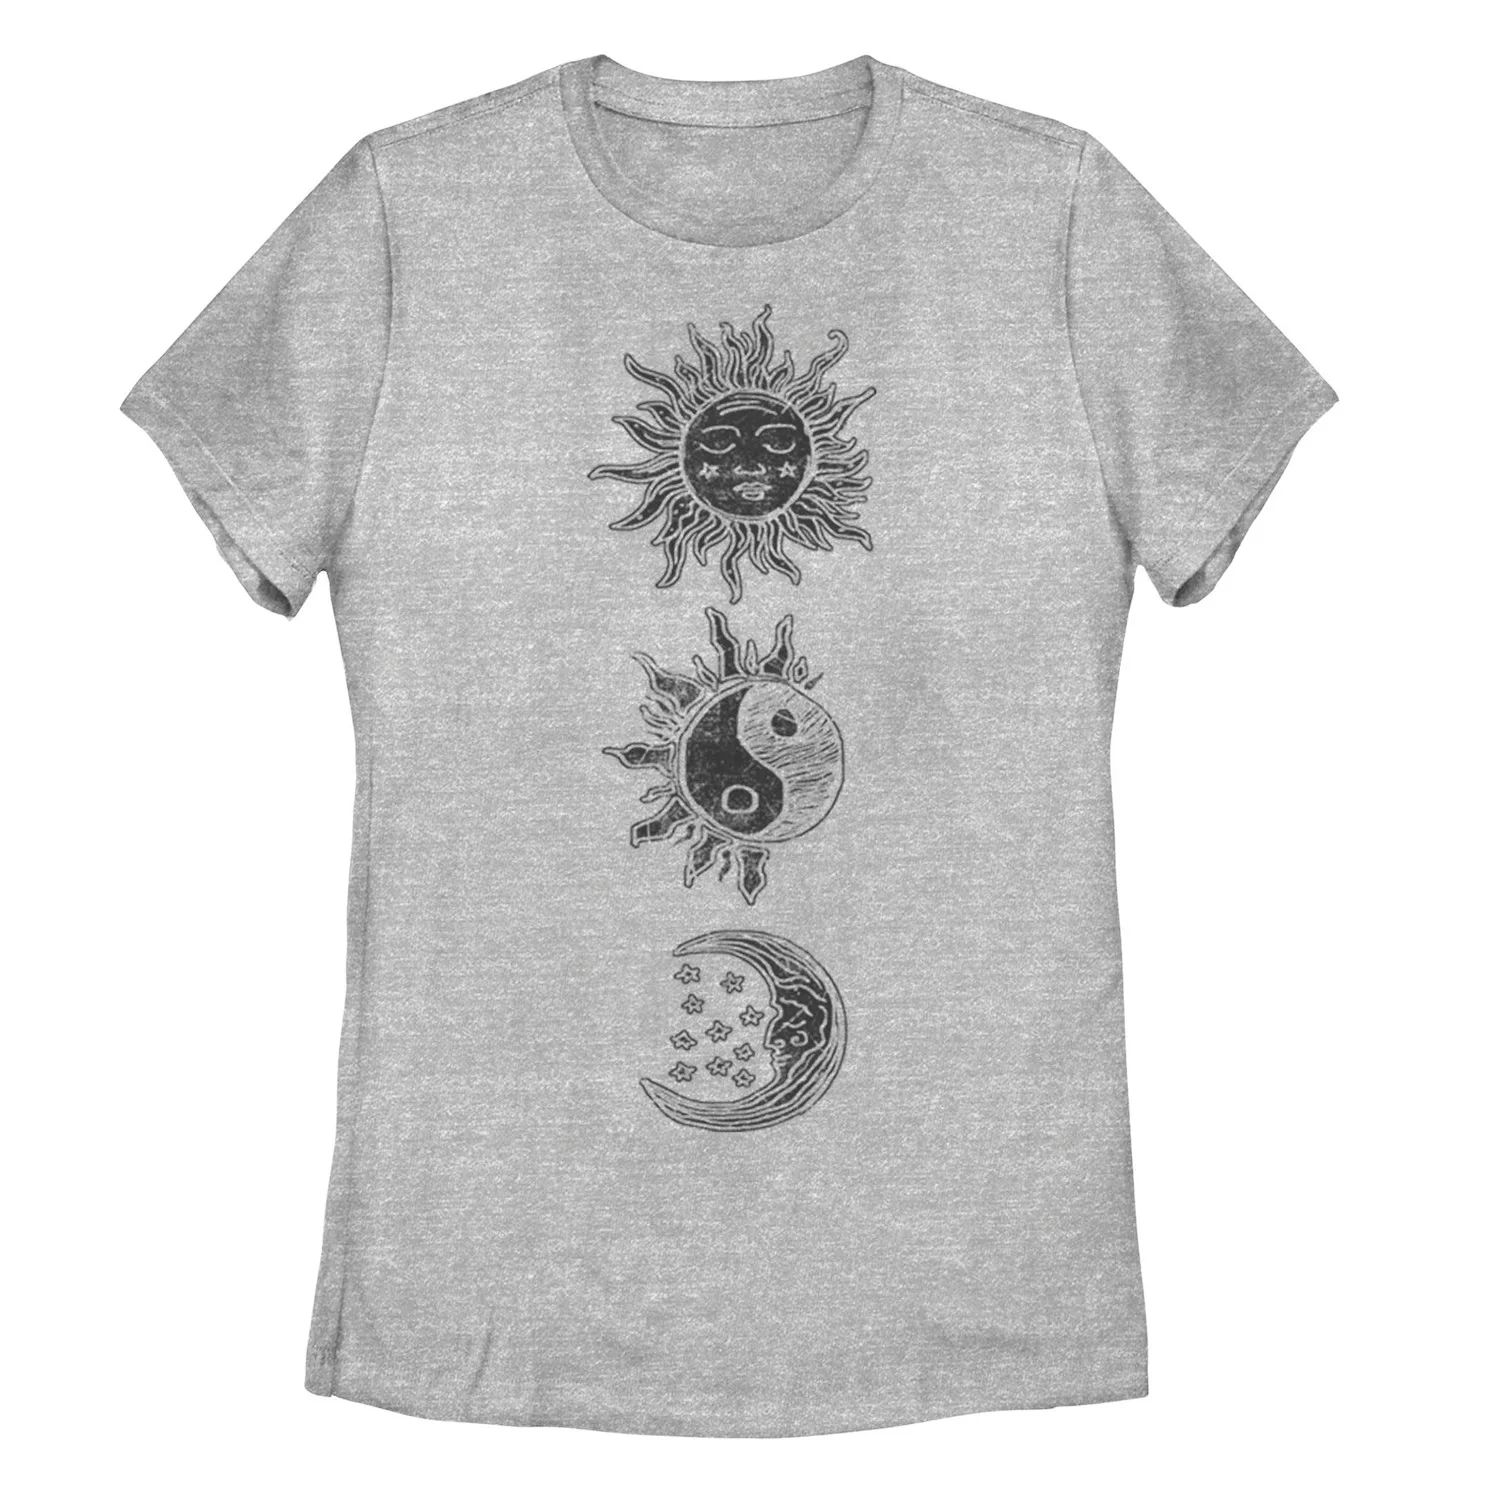 Детская футболка Sun Moon с гравюрой на дереве и галактическим рисунком